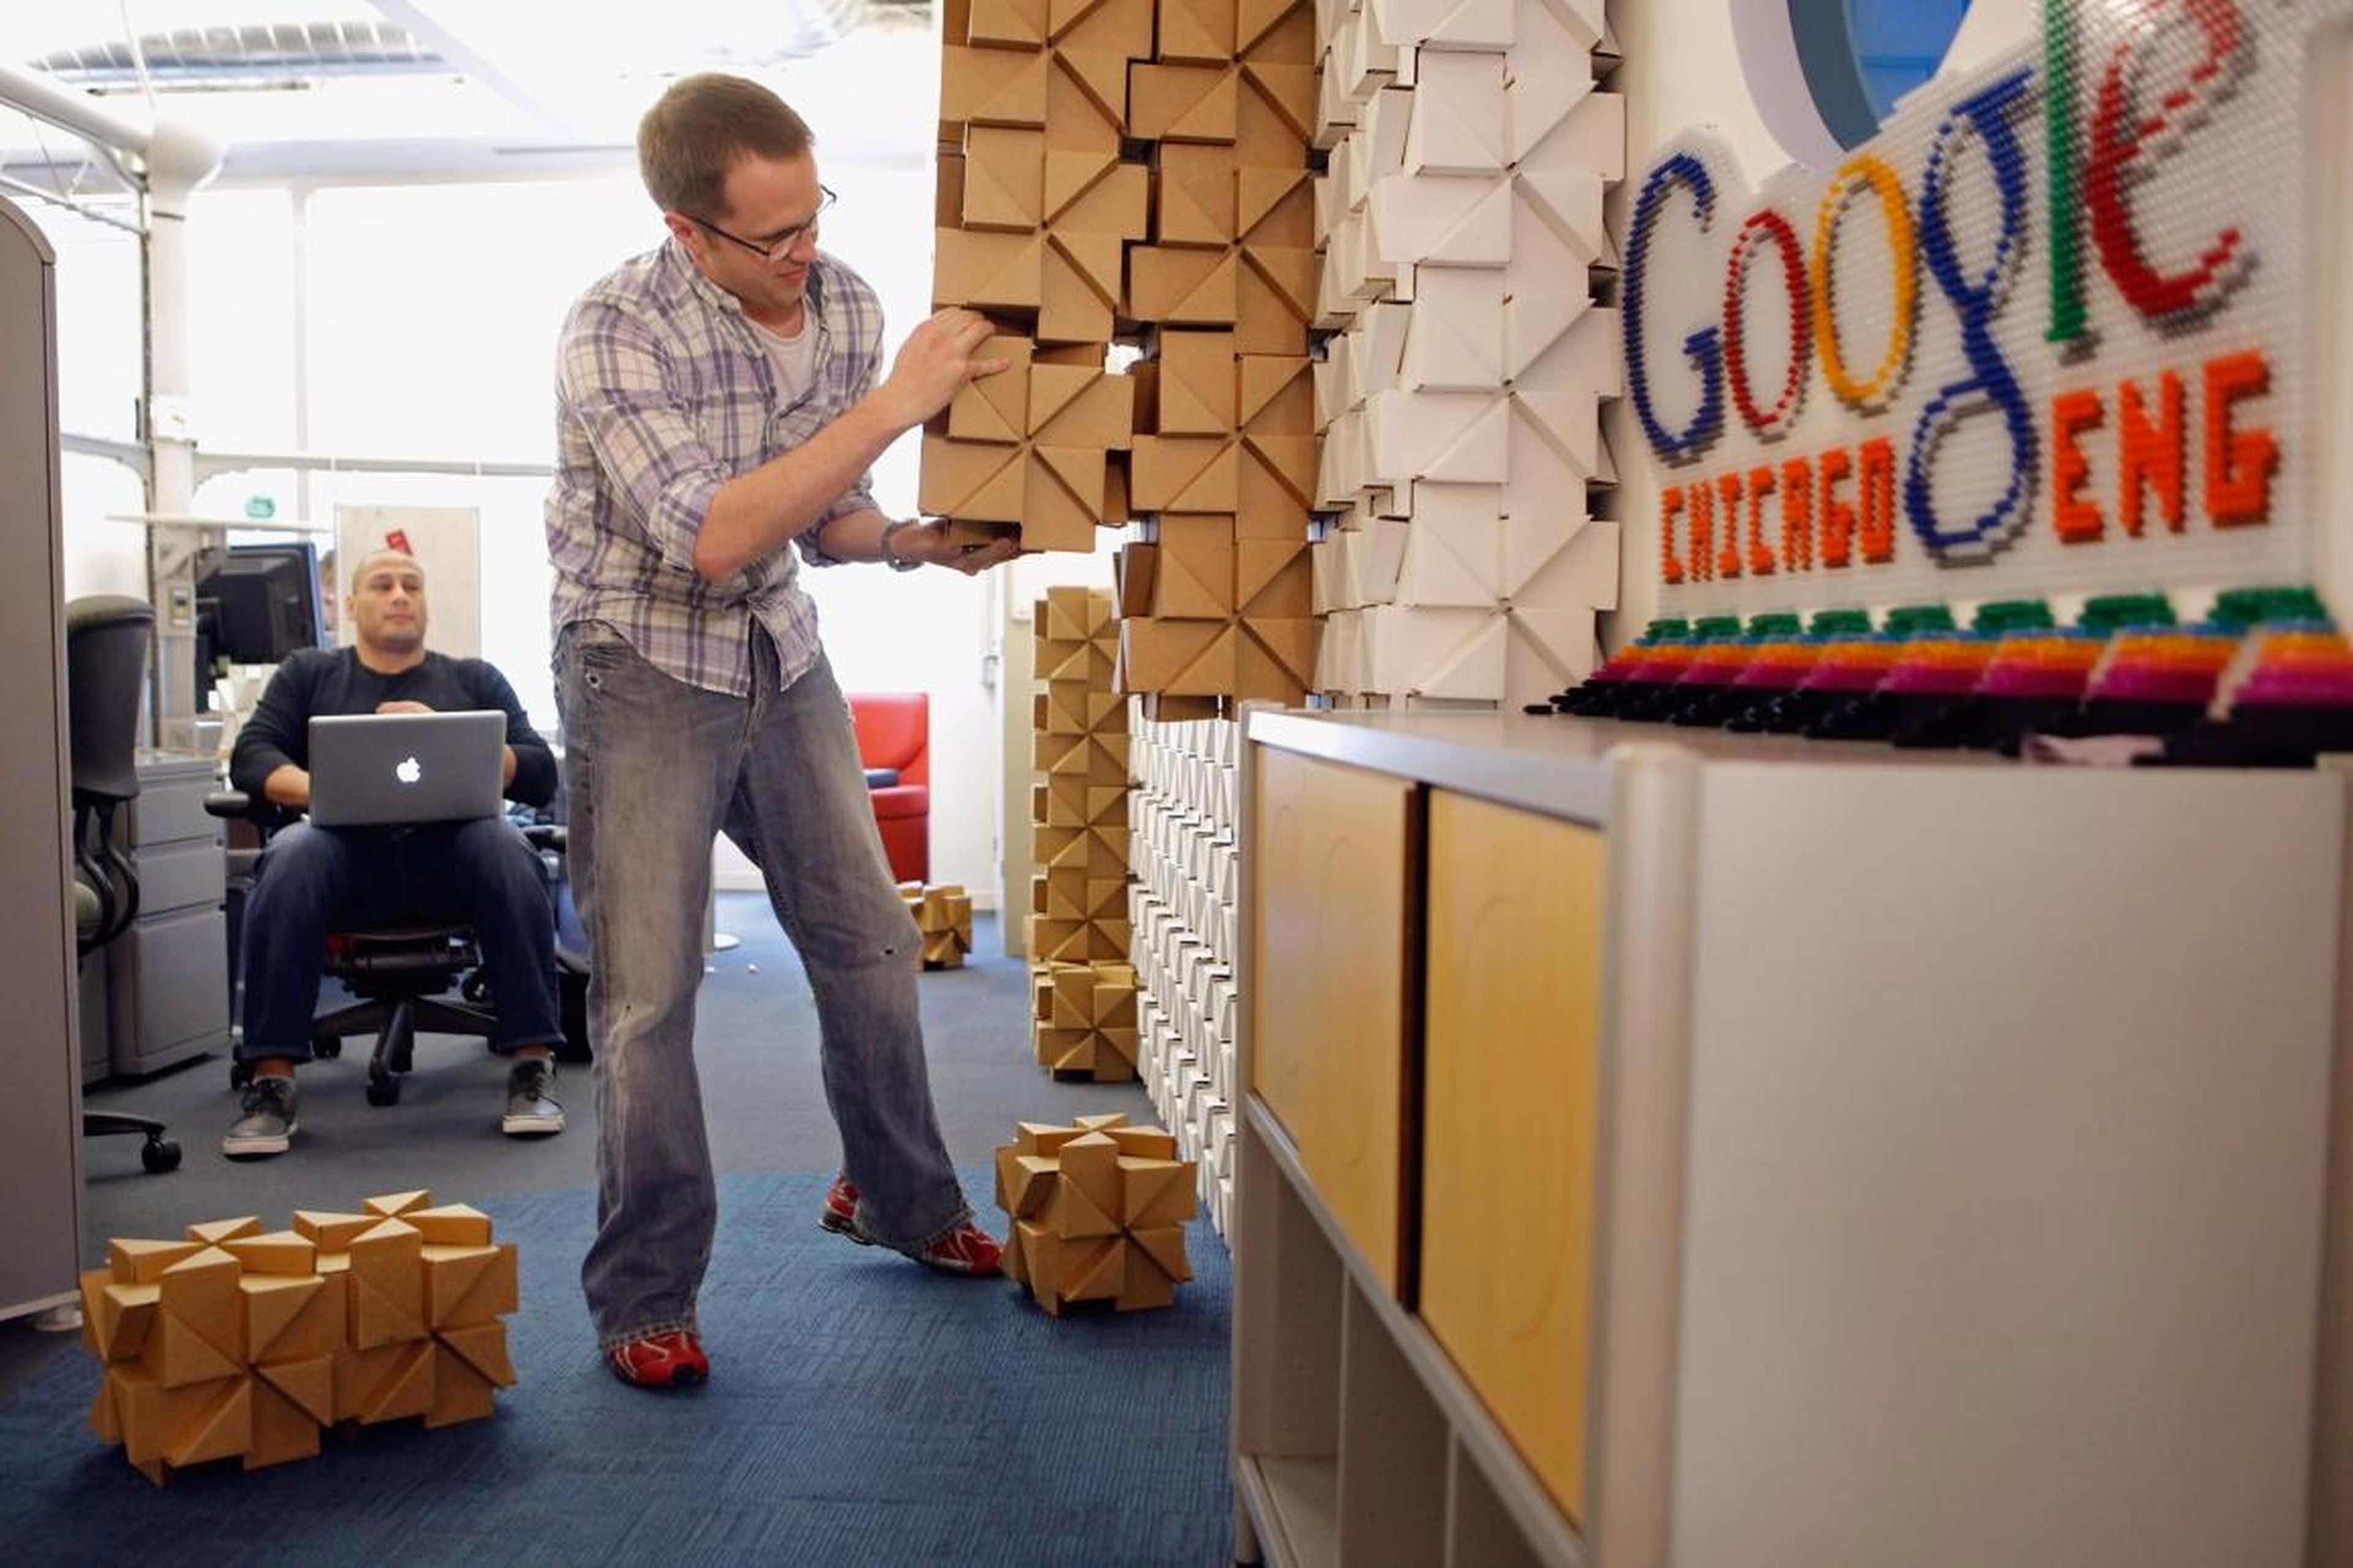 8. La oficina de Google en Chicago fue una vez un almacén frigorífico sin ventanas, y la renovación incluyó la adición de mucha luz natural.